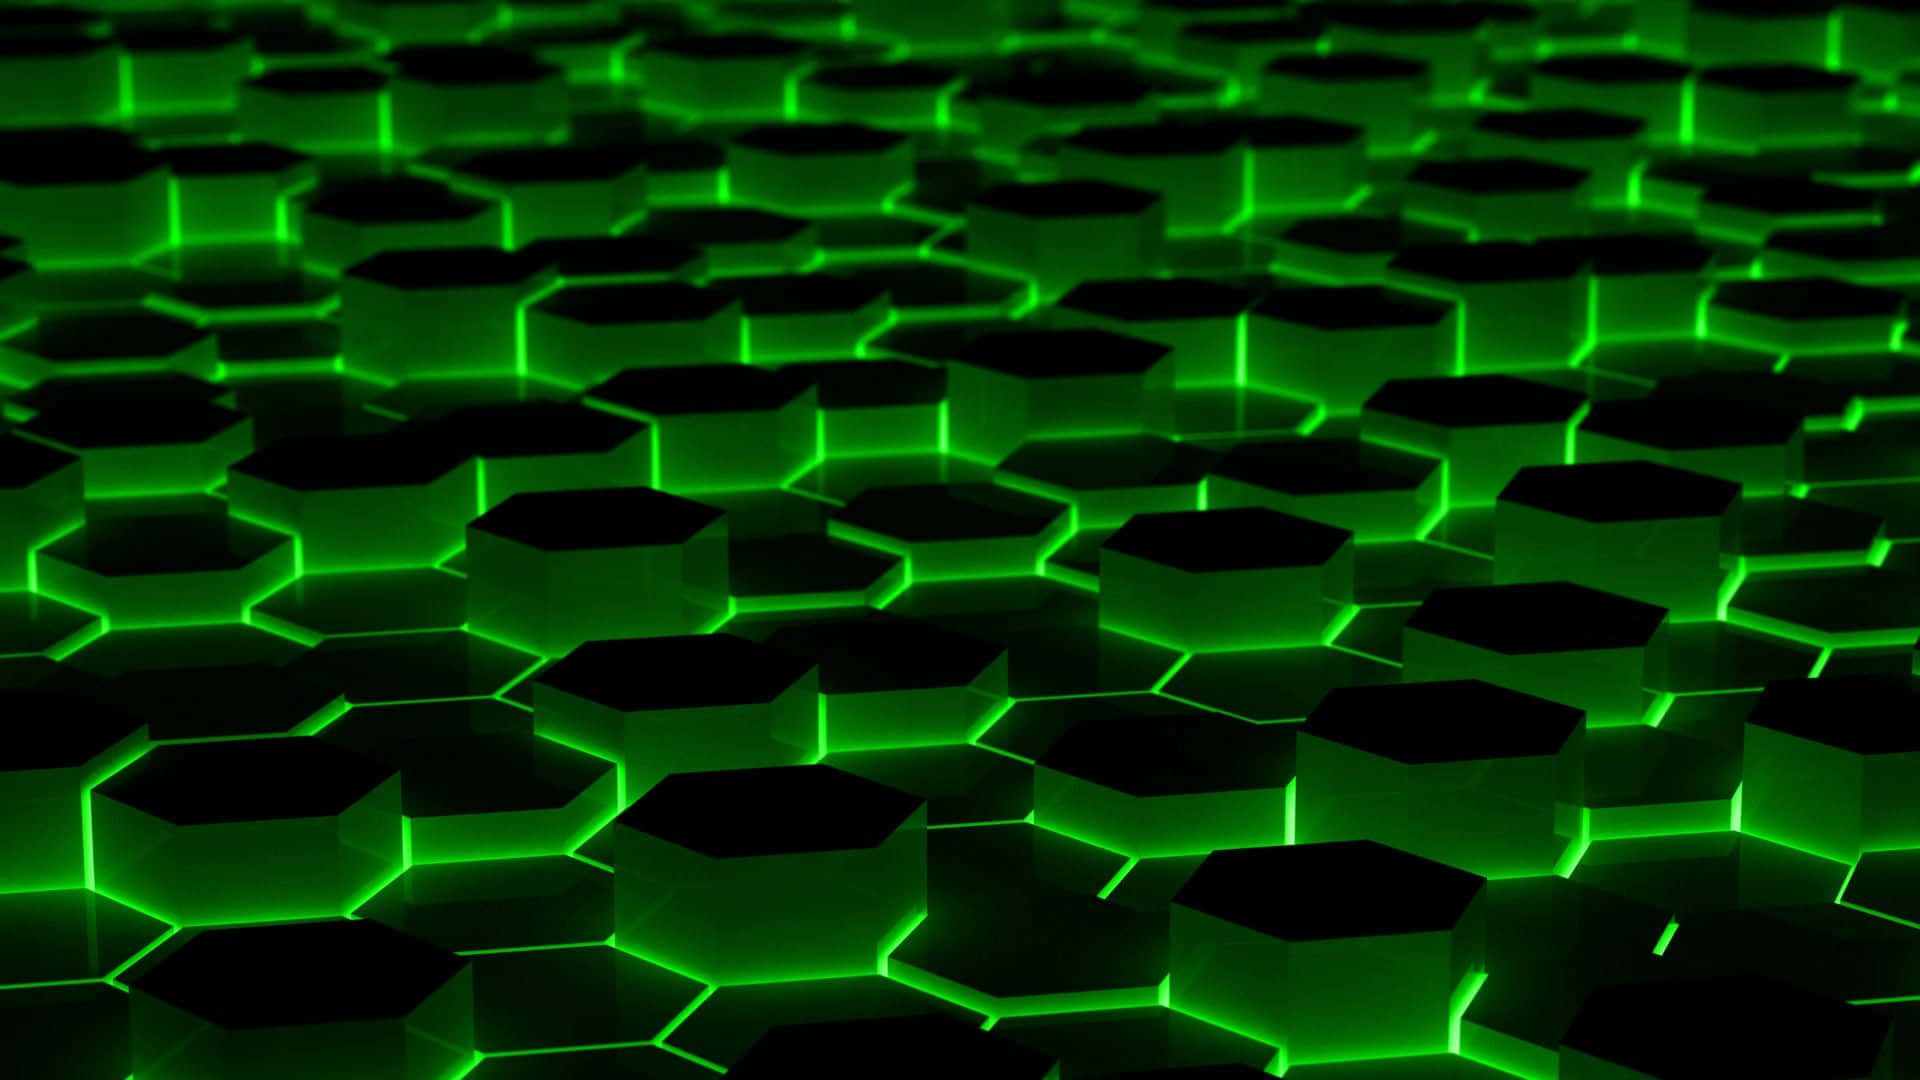 Lime Green Aesthetic Hexagonal Flooring Wallpaper